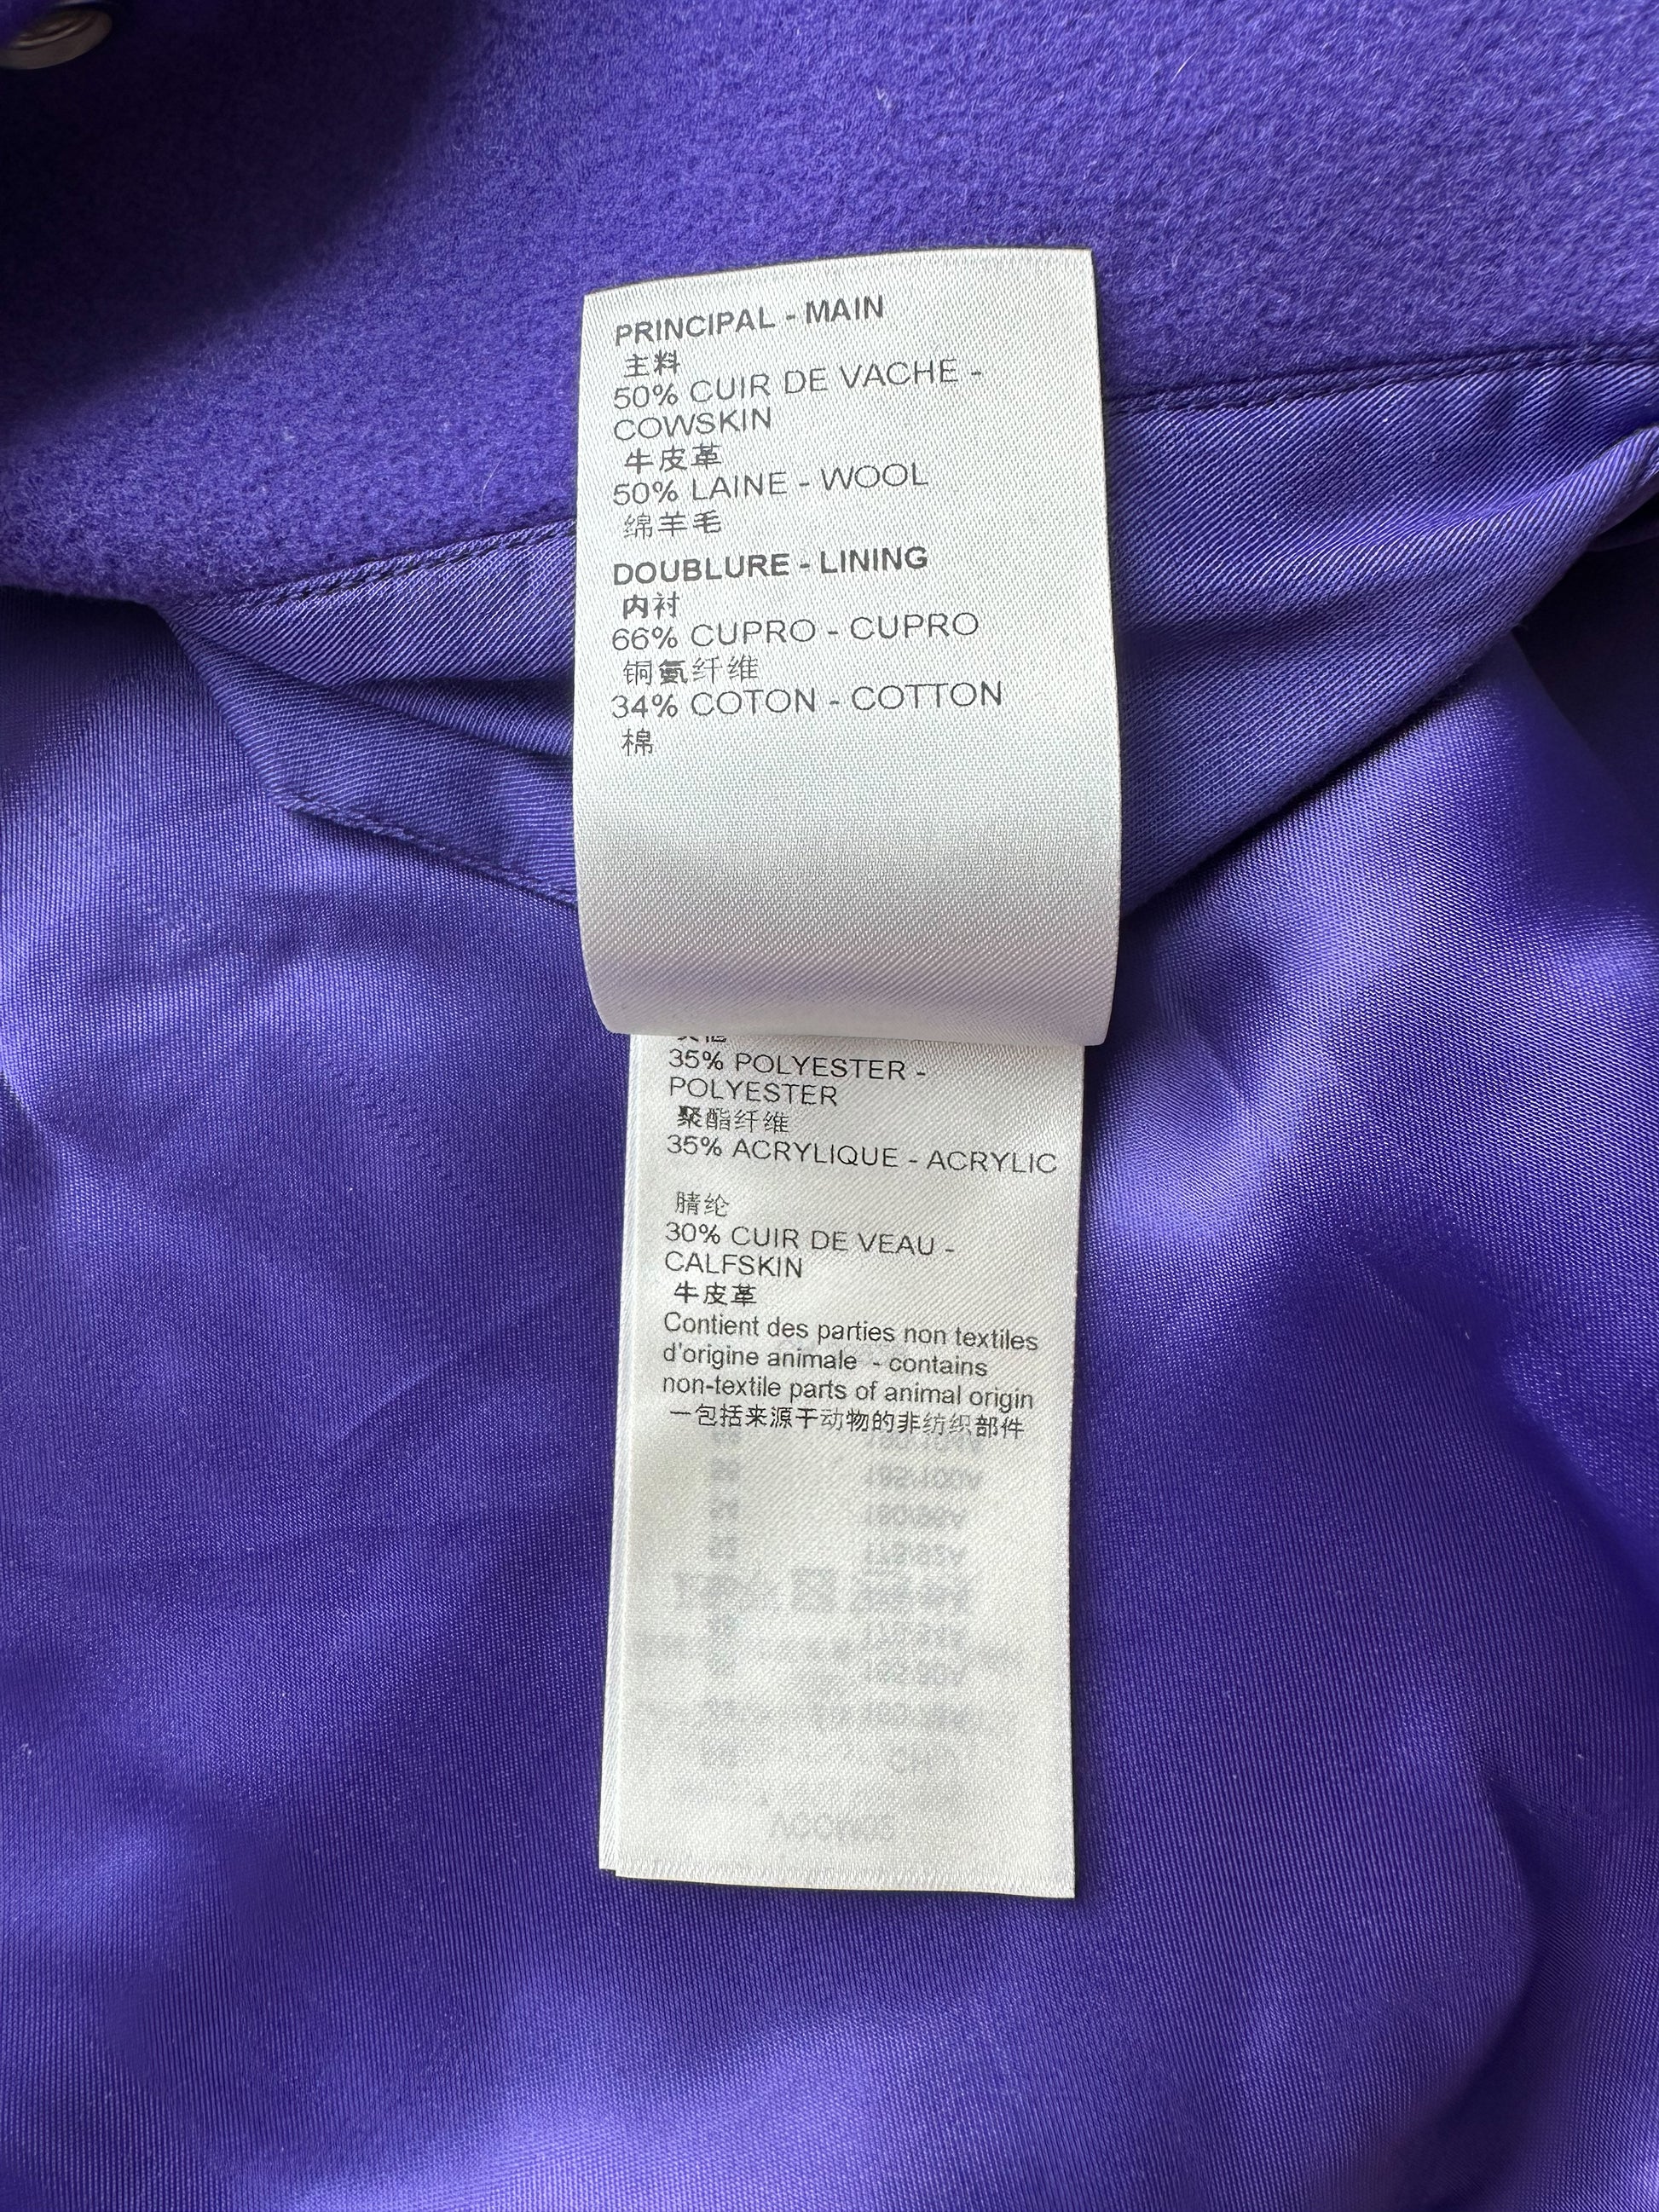 Louis Vuitton Purple Denim Jacket - Size 50